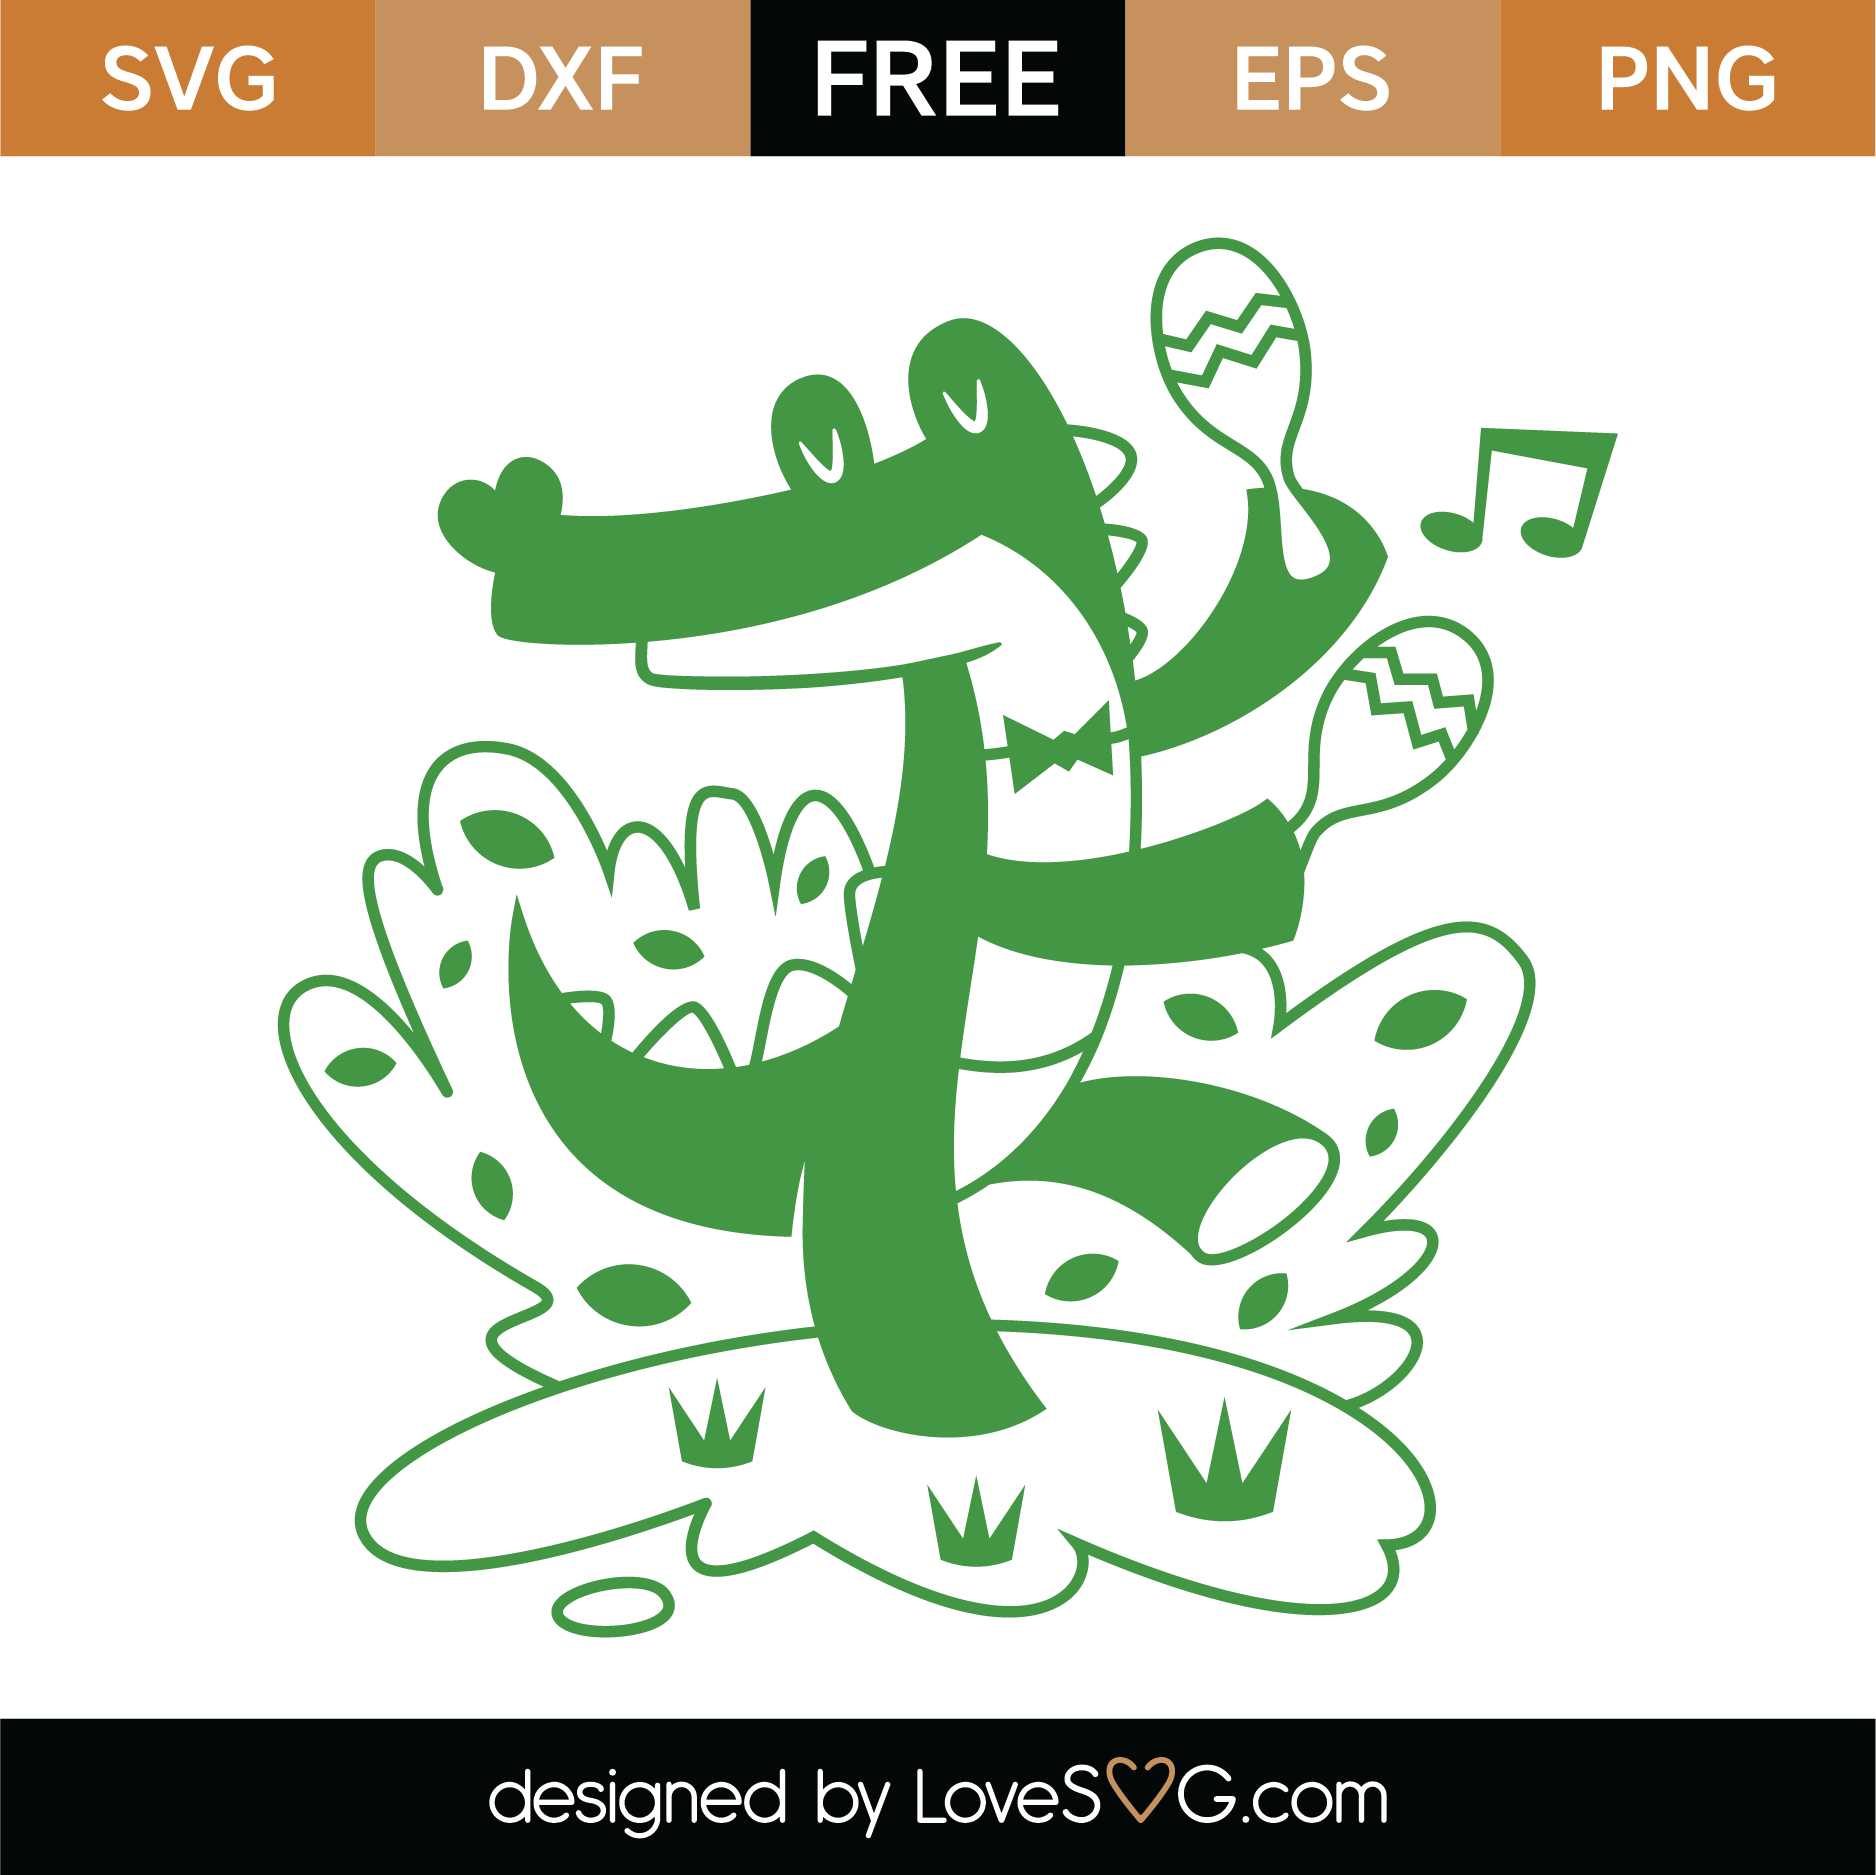 Download Free Whimsical Alligator SVG Cut File | Lovesvg.com